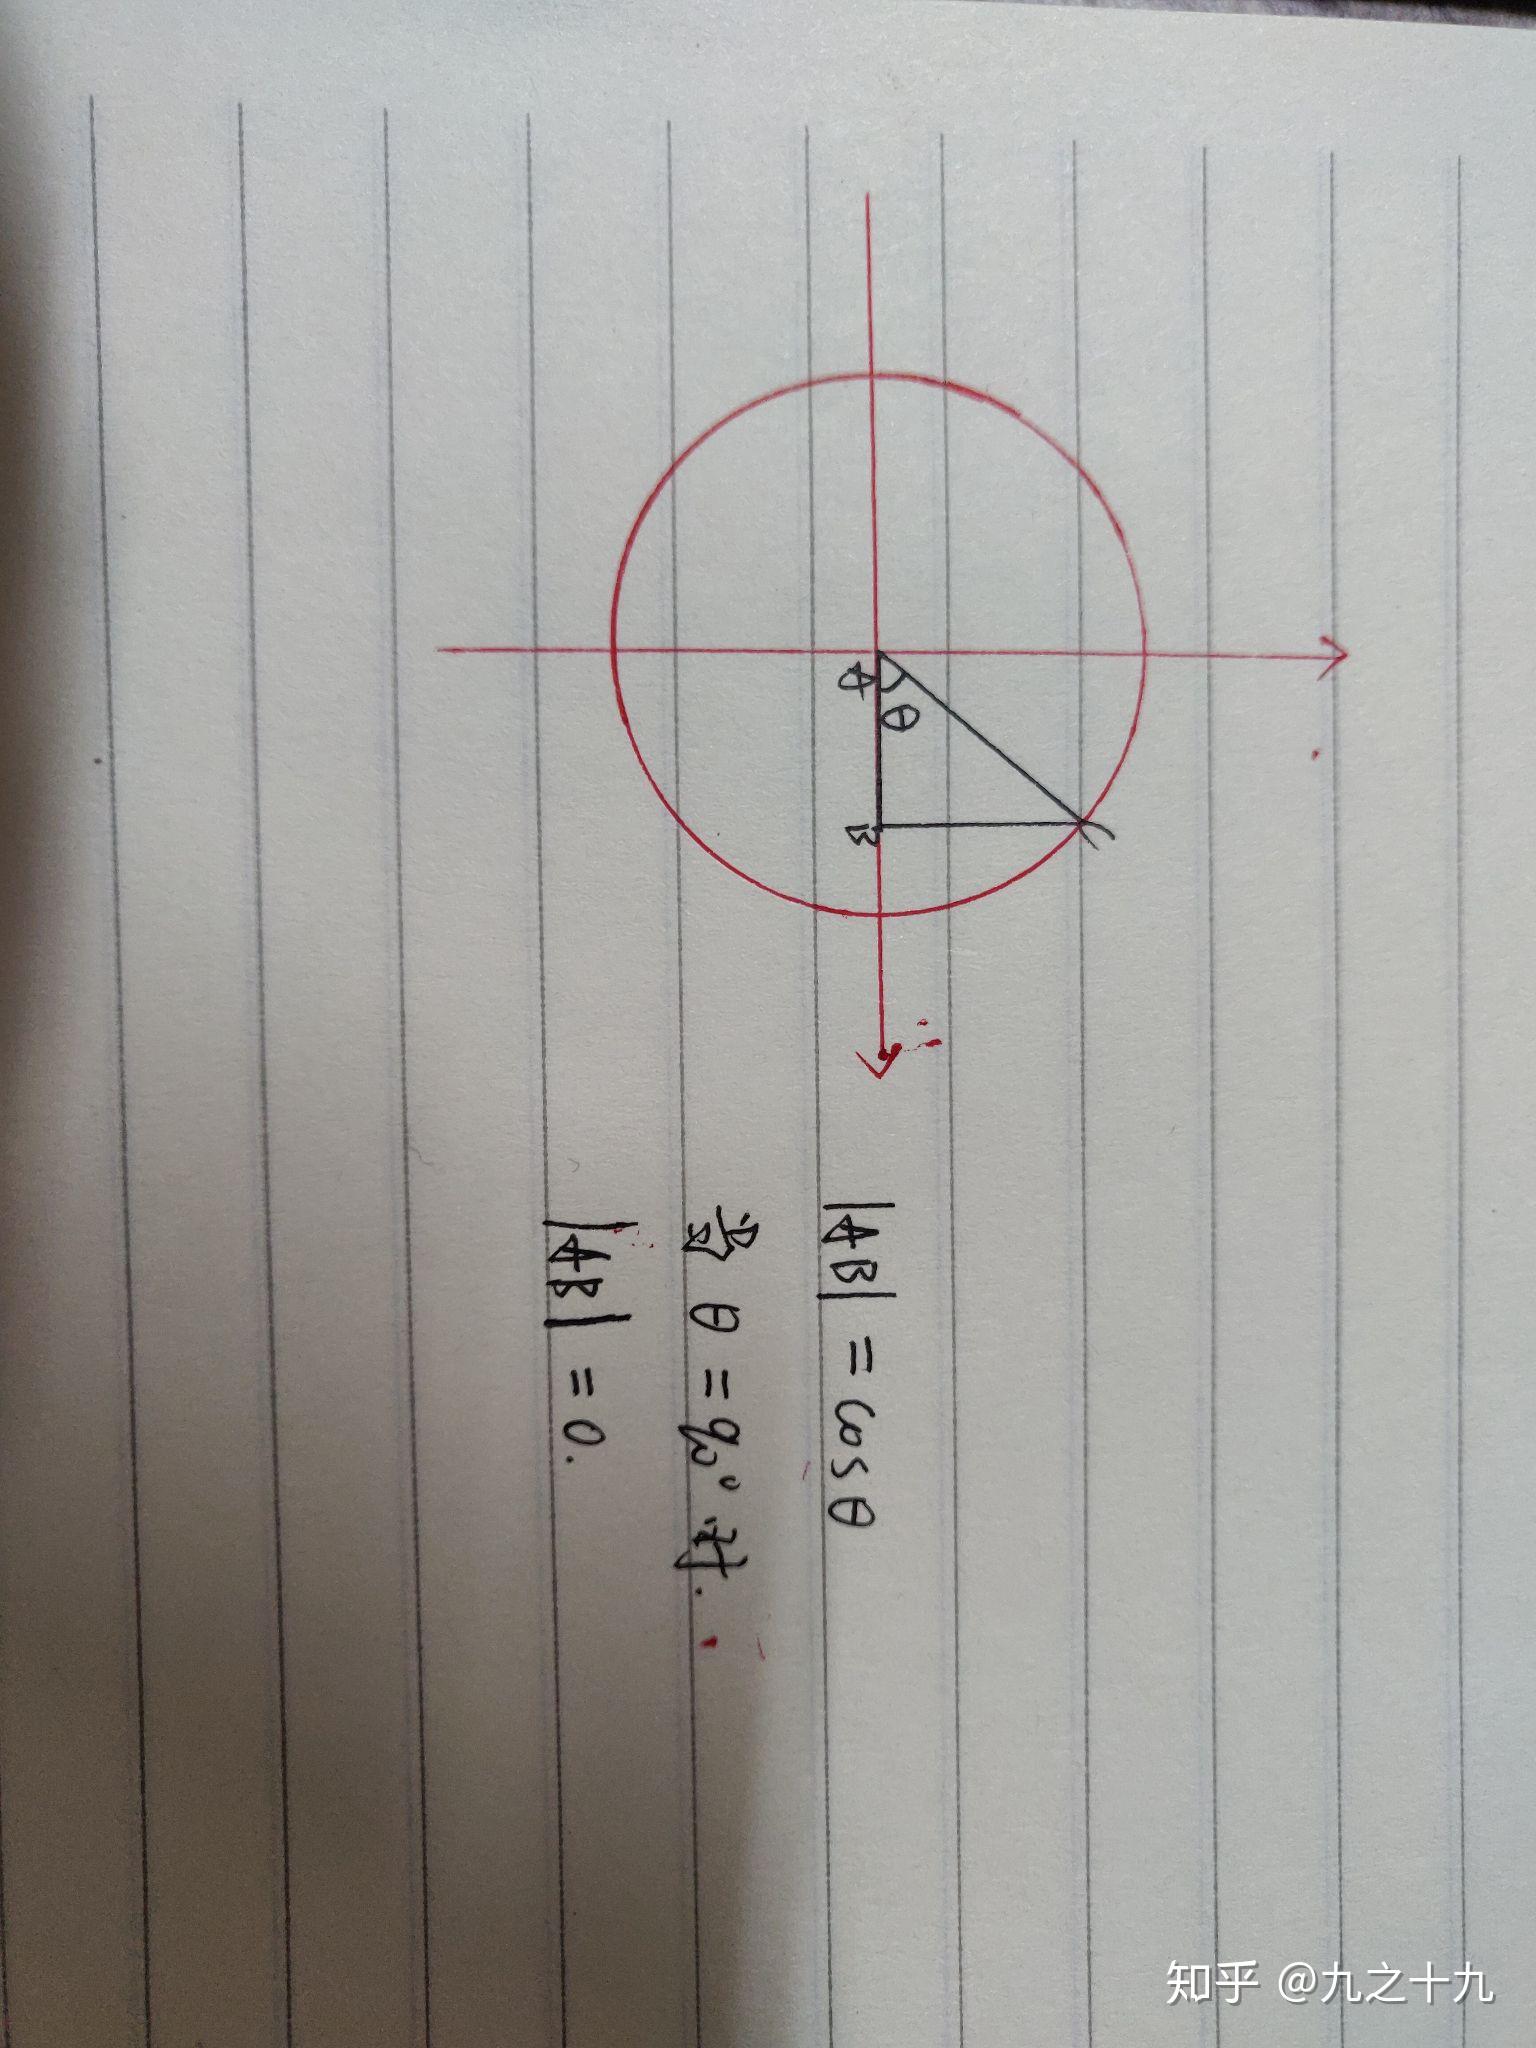 为什么三角函数中cos90等于零呢? 